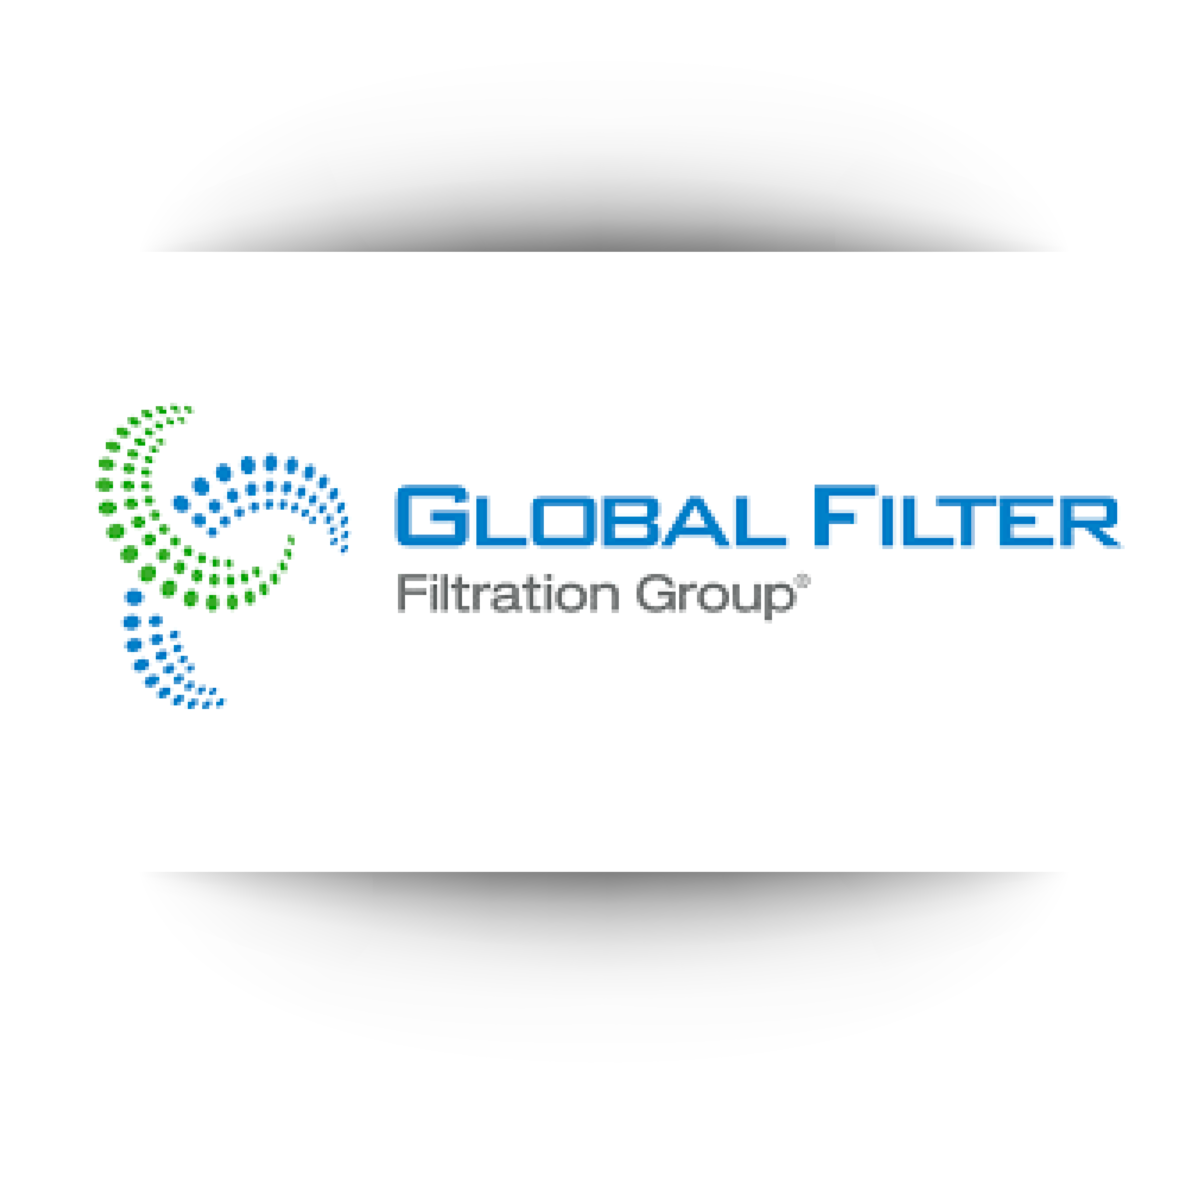 global filter filtration group logo